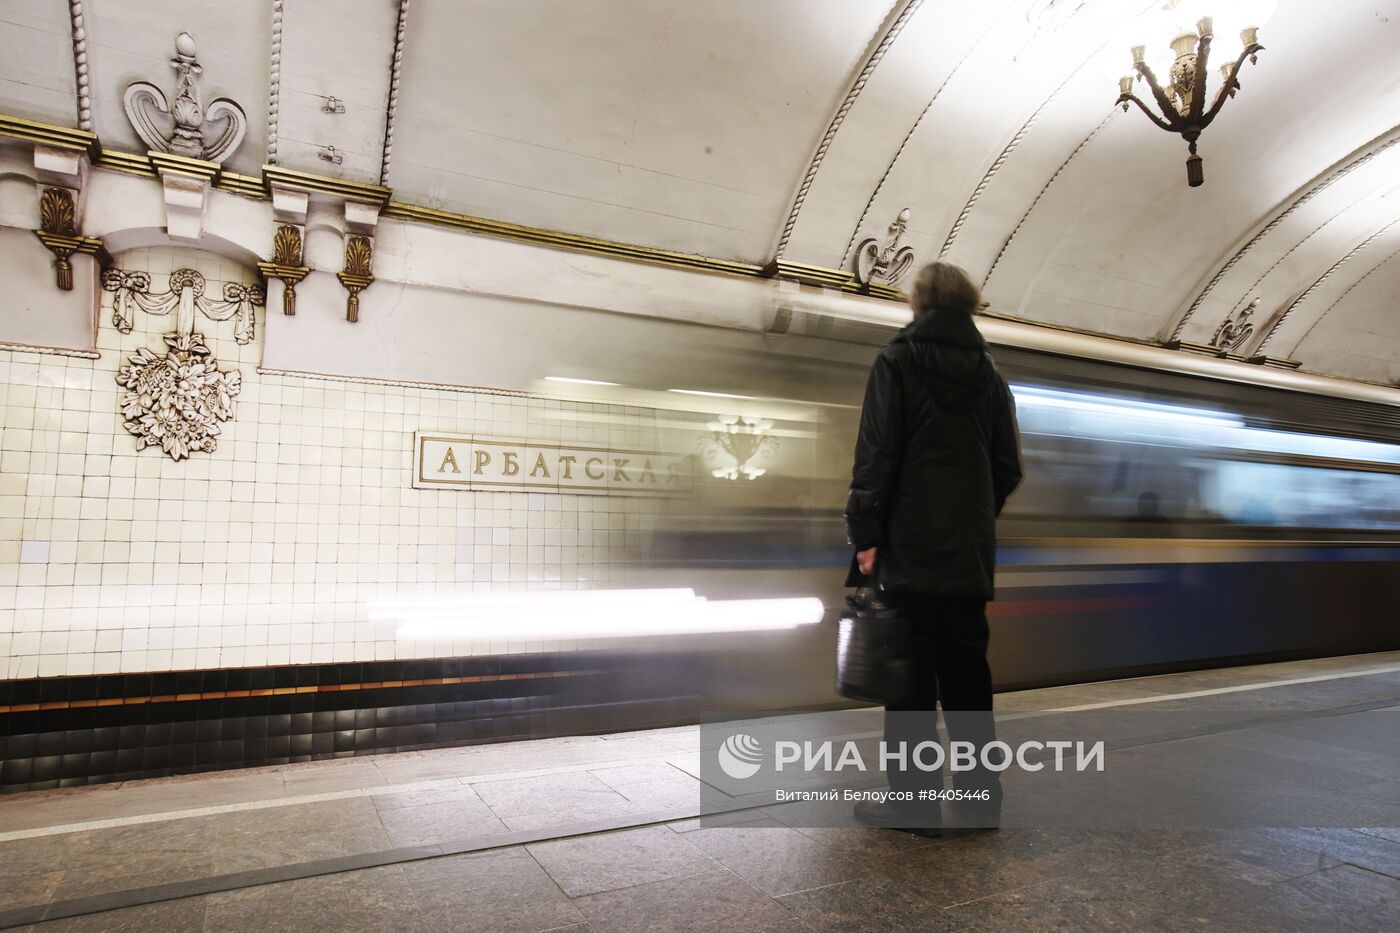 70 лет со дня открытия станций метро Арбатская, Смоленская и Киевская